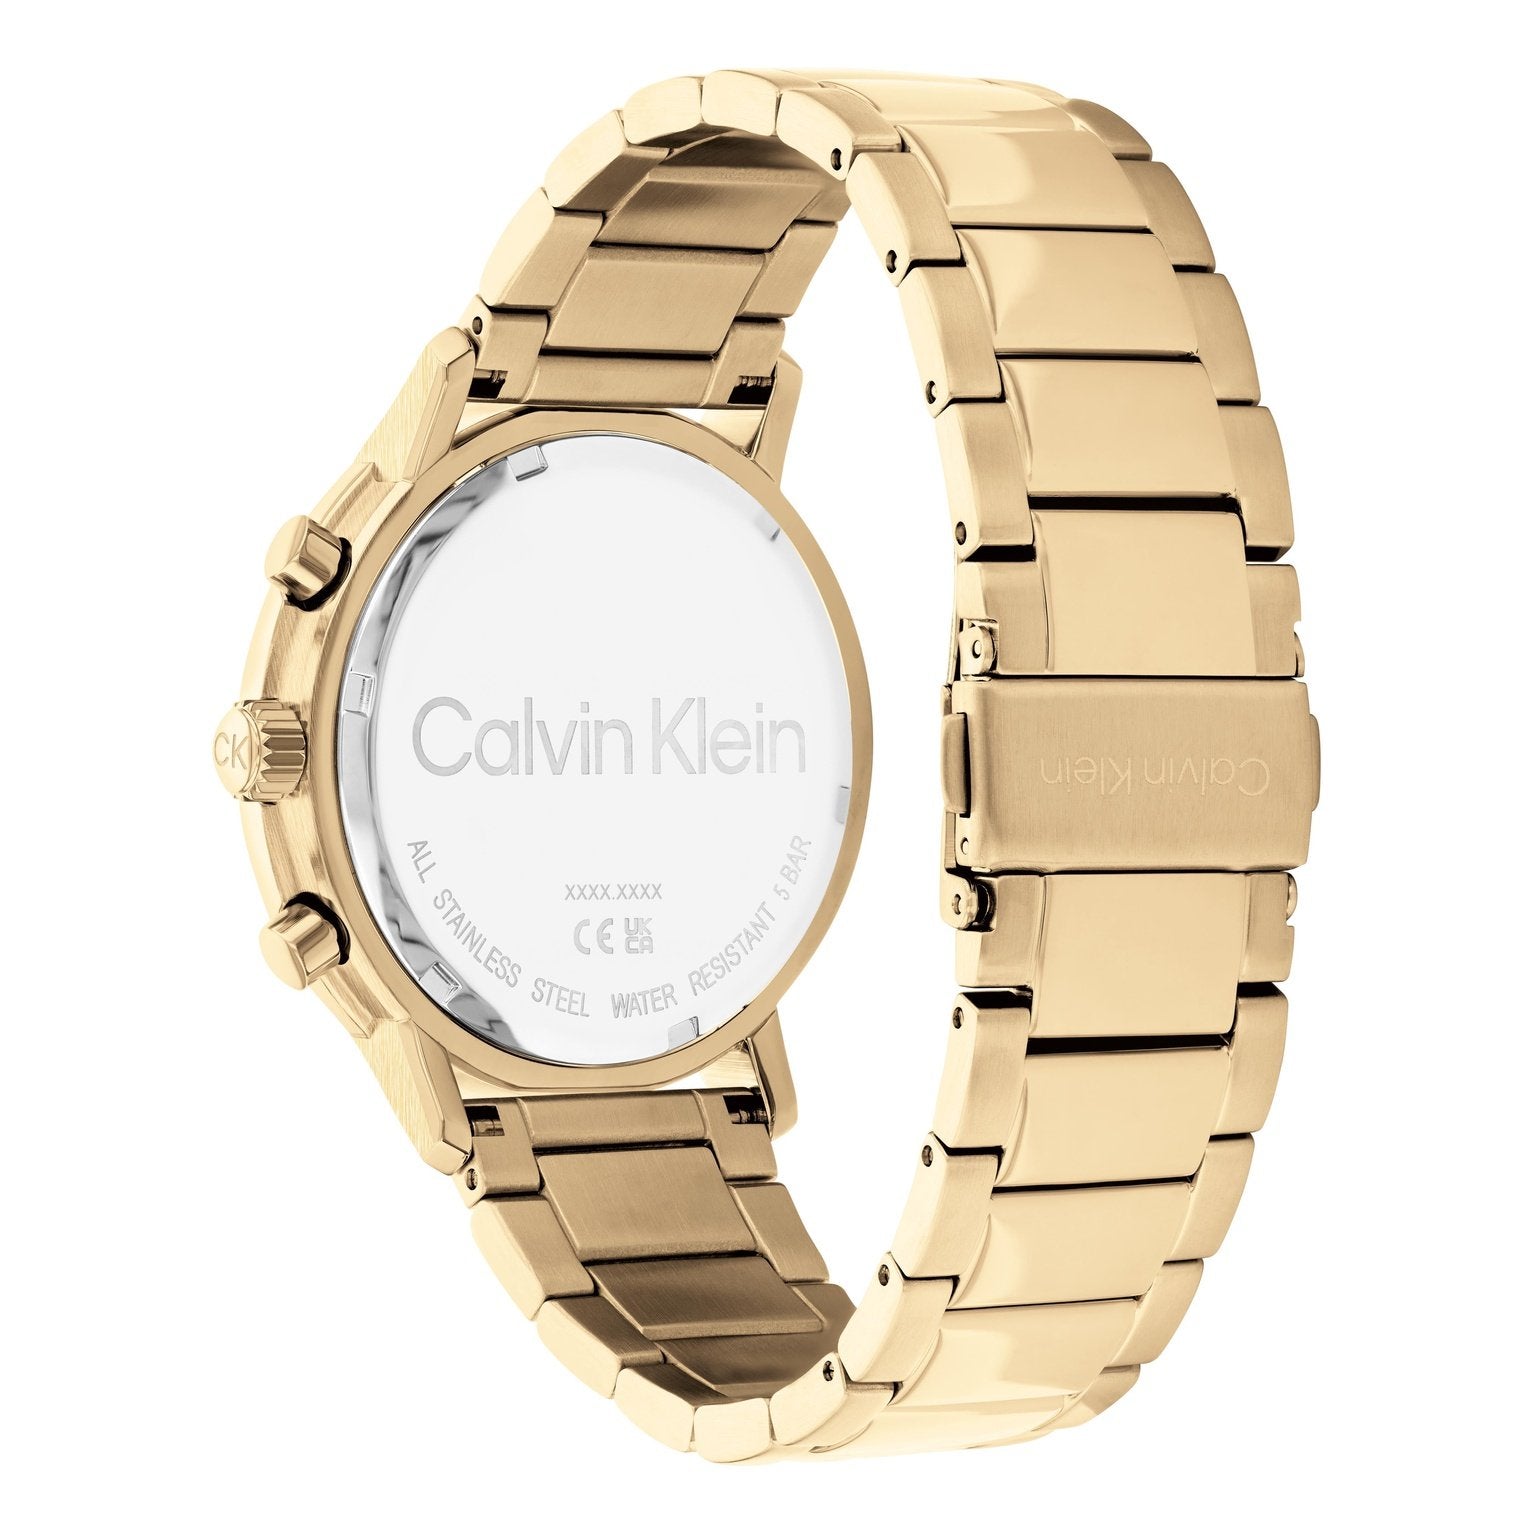 Men's Gauge Watch 25200065 Calvin Klein